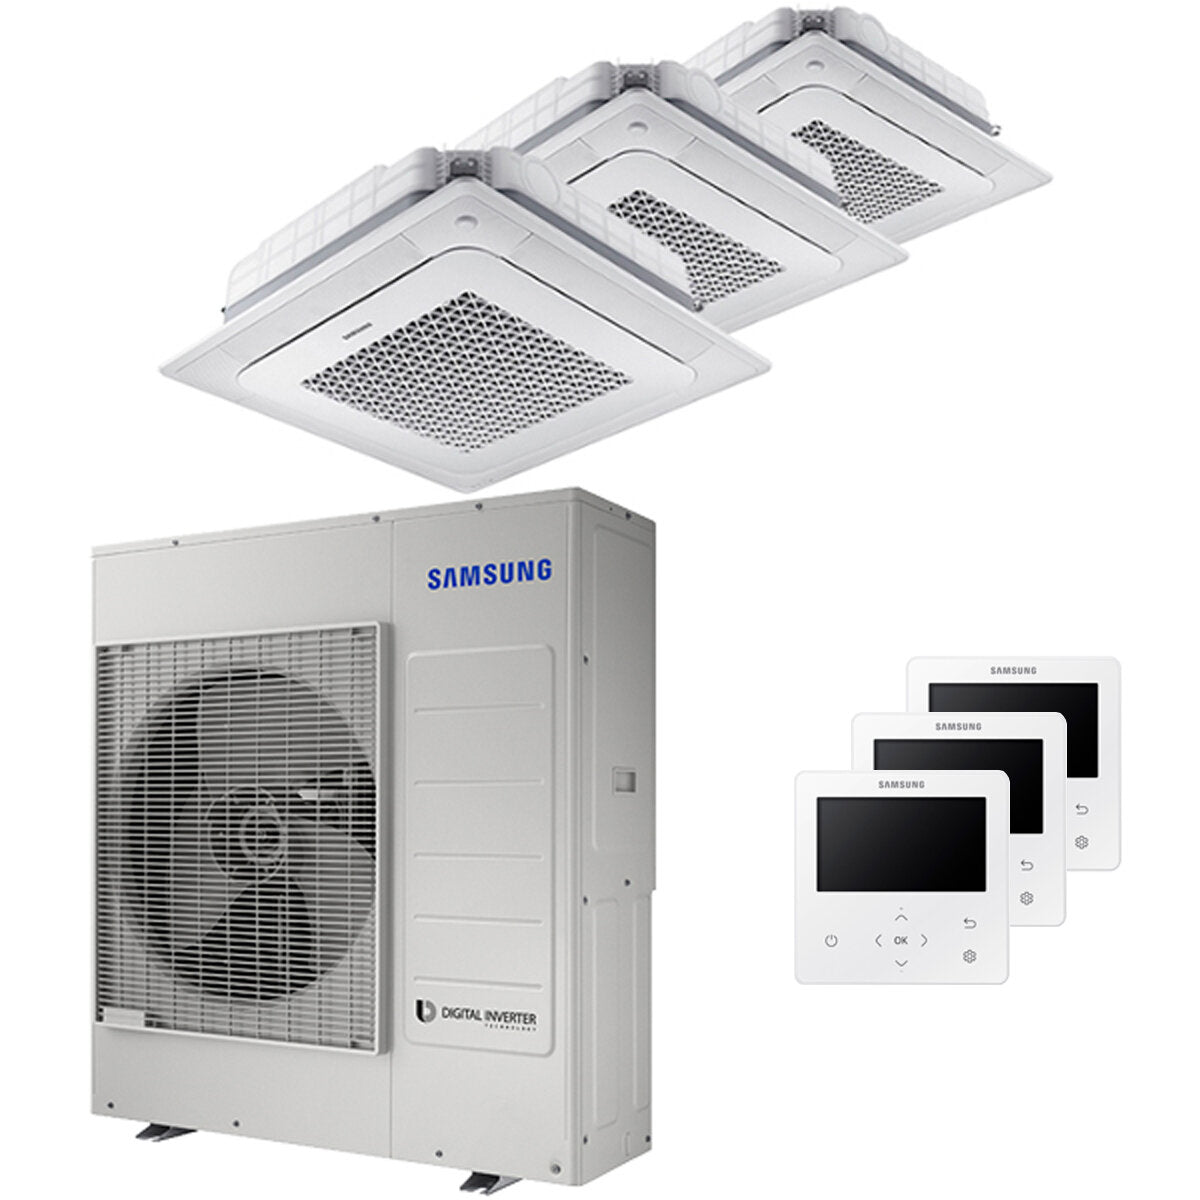 Samsung Air conditioner Windfree 4-way trial split 18000 + 18000 + 18000 BTU inverter A ++ outdoor unit 10.0 kW